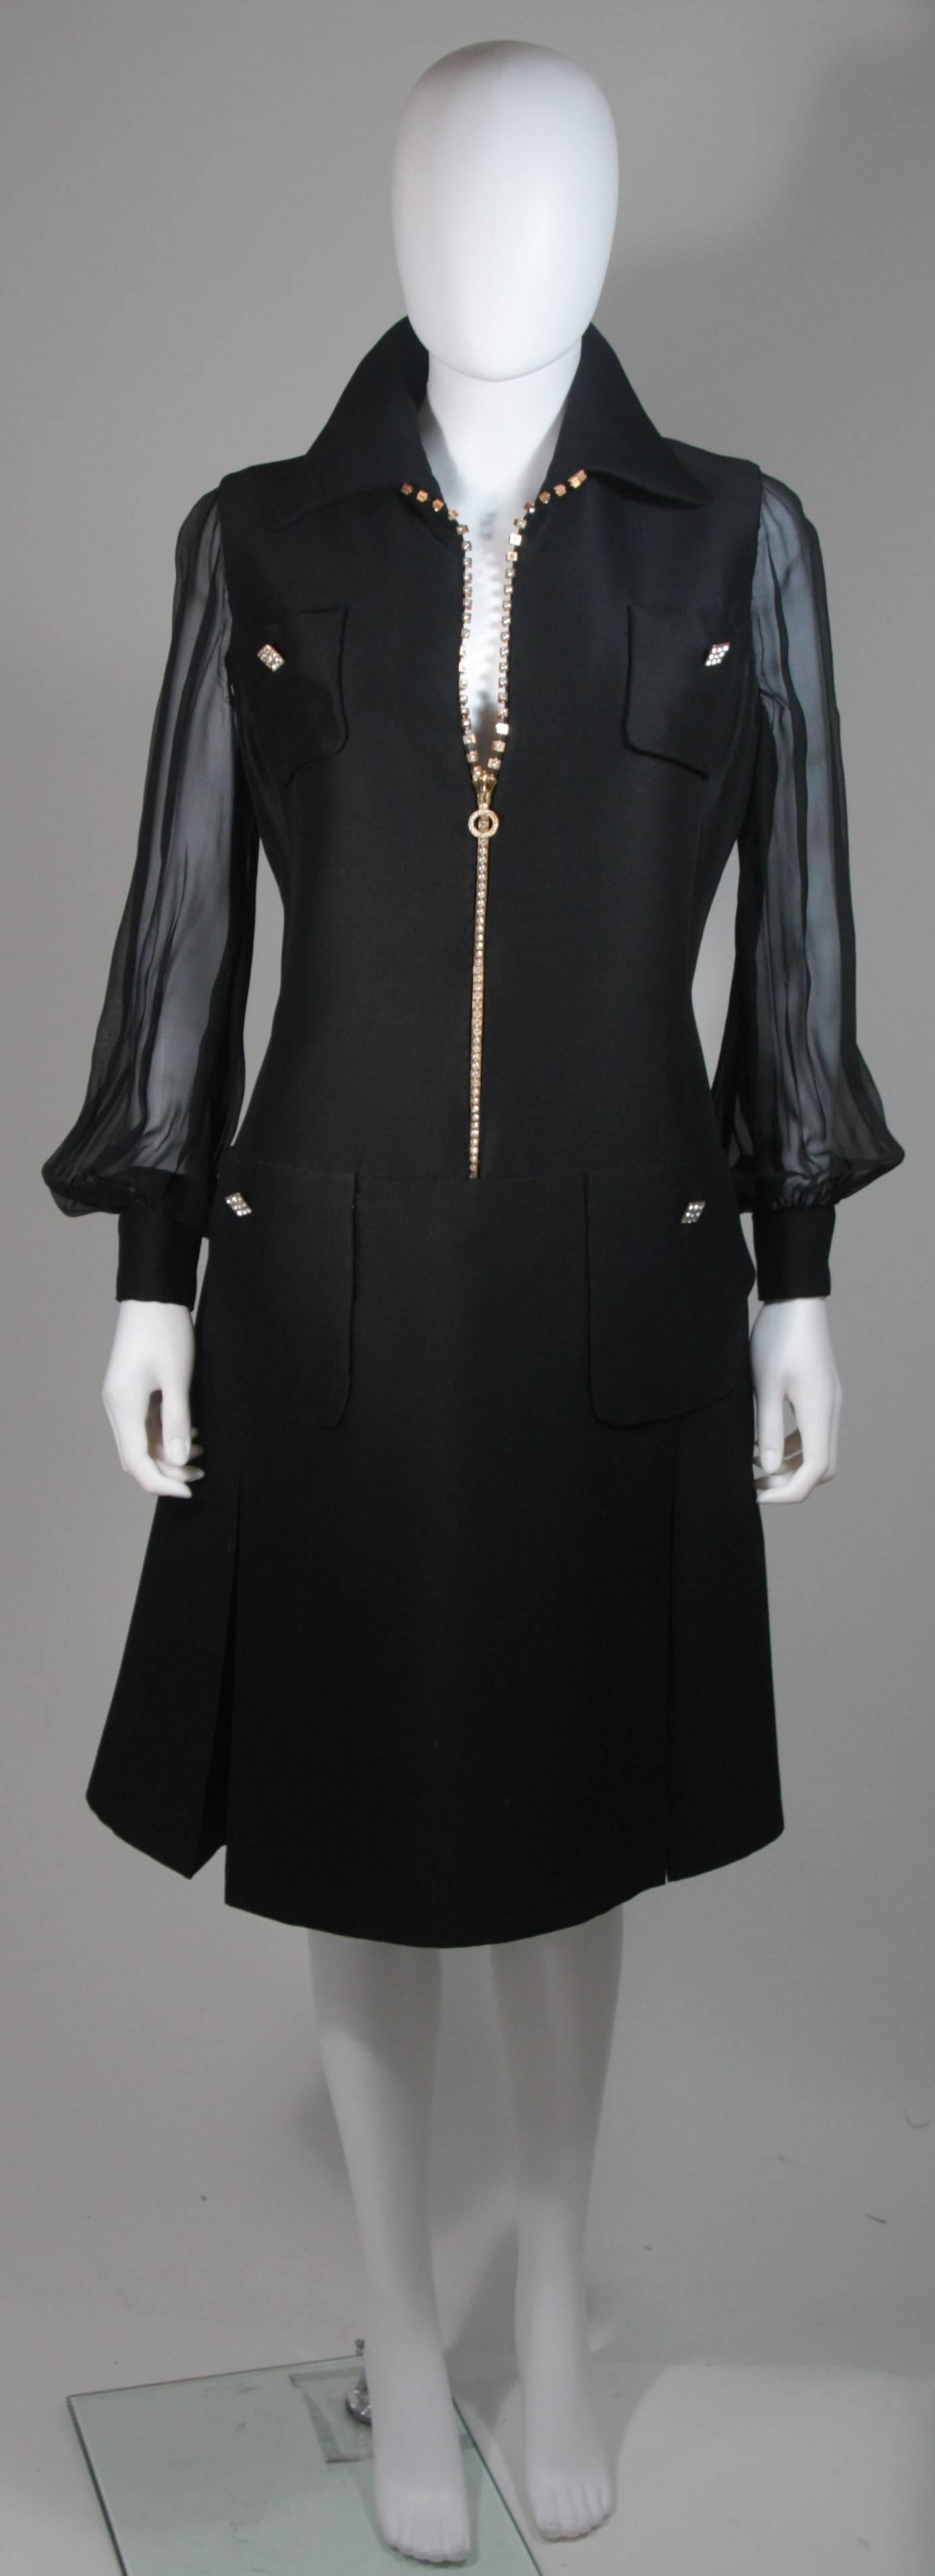  Dieses Kleid besteht aus schwarzer Seide mit Chiffonärmeln. Mit wunderschönen Strassstein-Akzenten, einschließlich eines Reißverschlusses mit Strasssteinen in der Funktion. In ausgezeichnetem Vintage-Zustand, es gibt einige Zeichen des Alters und